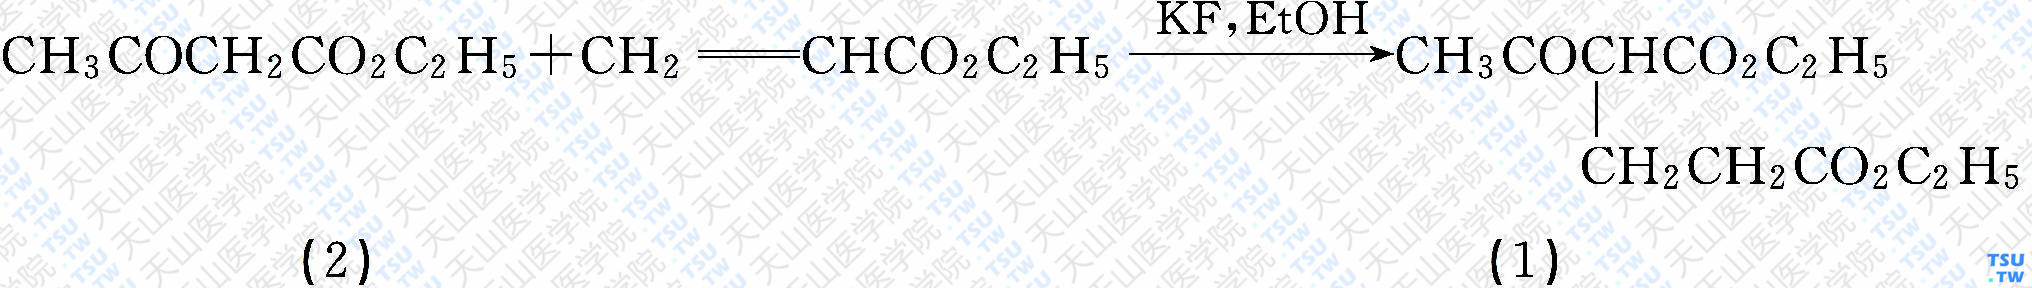 2-乙酰基戊二酸二乙酯（分子式：C<sub>11</sub>H<sub>18</sub>O<sub>5</sub>）的合成方法路线及其结构式